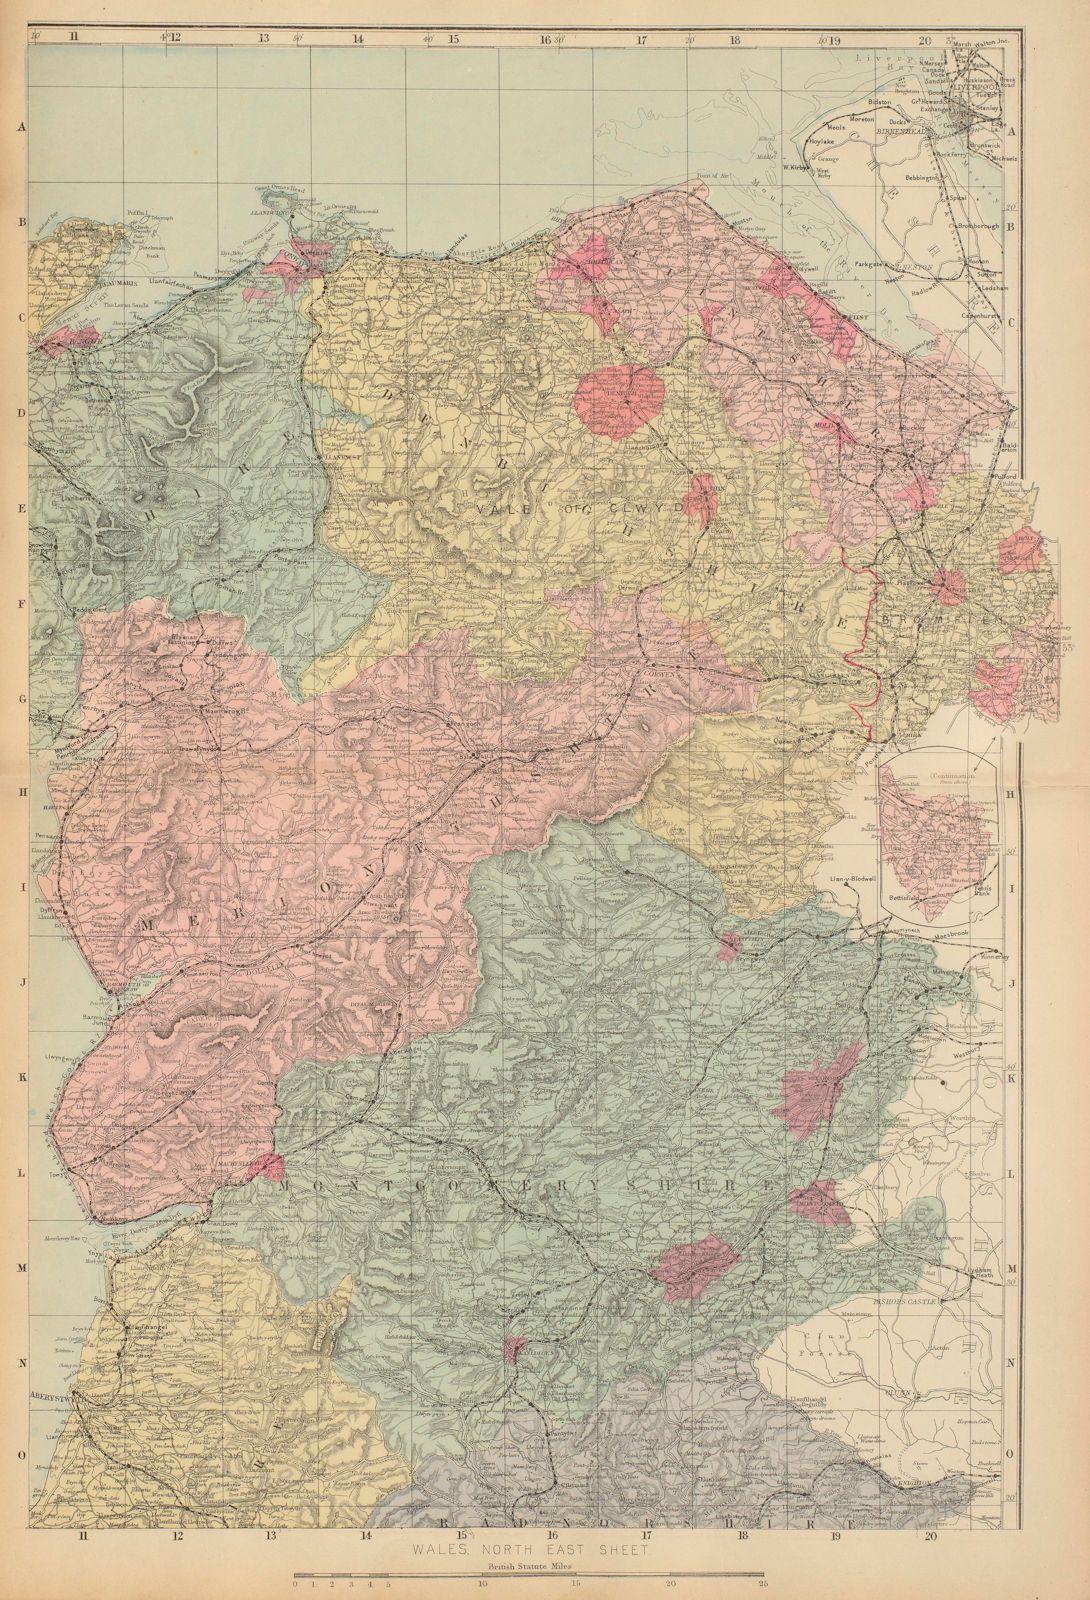 WALES (North East) Flint Denbigh Merionethshire Clywd GW BACON 1885 old map